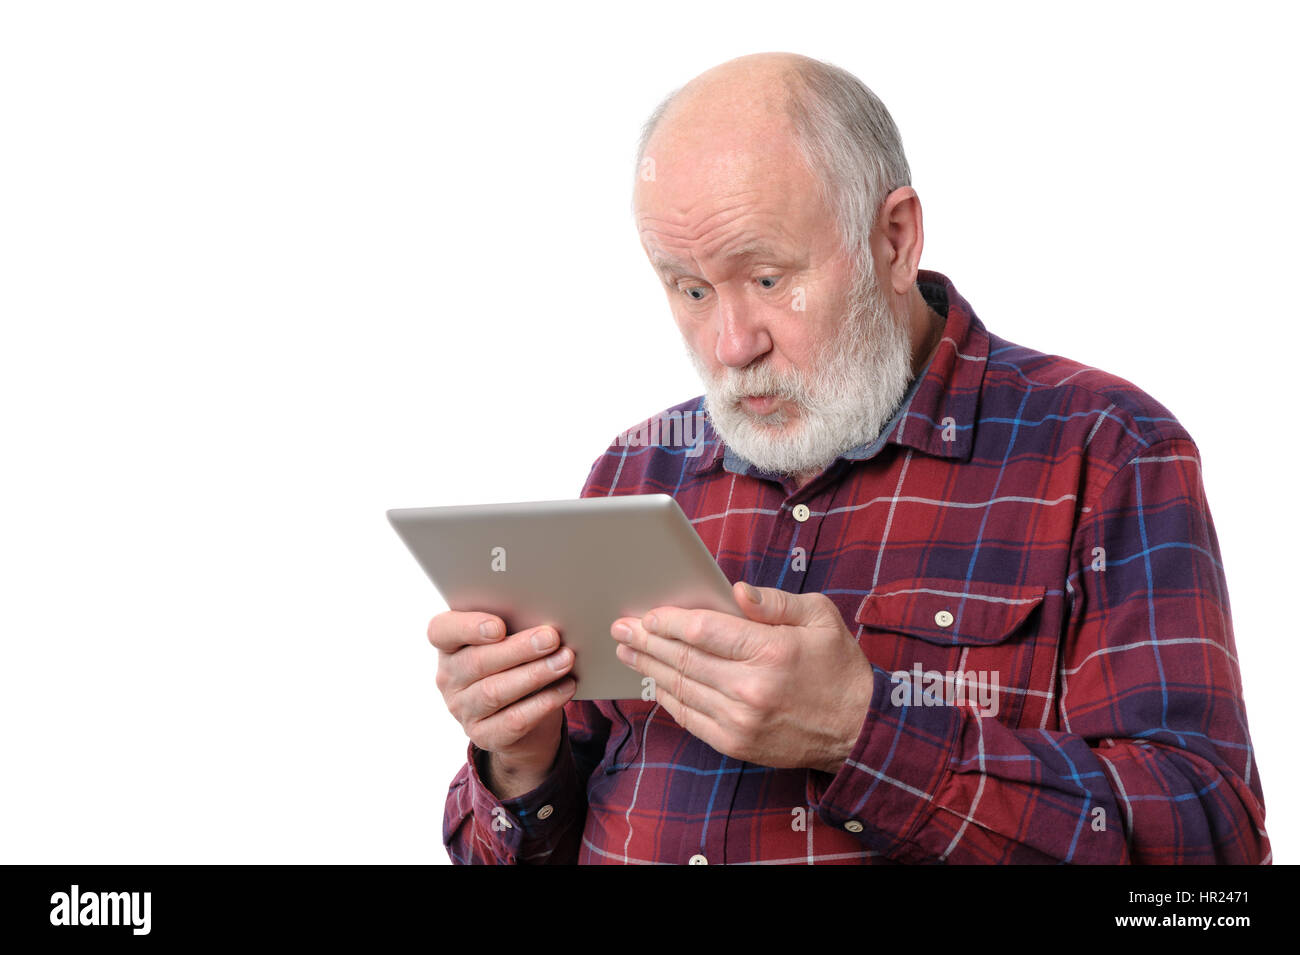 Man étonné avec quelque chose à l'écran de l'ordinateur tablette, isolated on white Banque D'Images